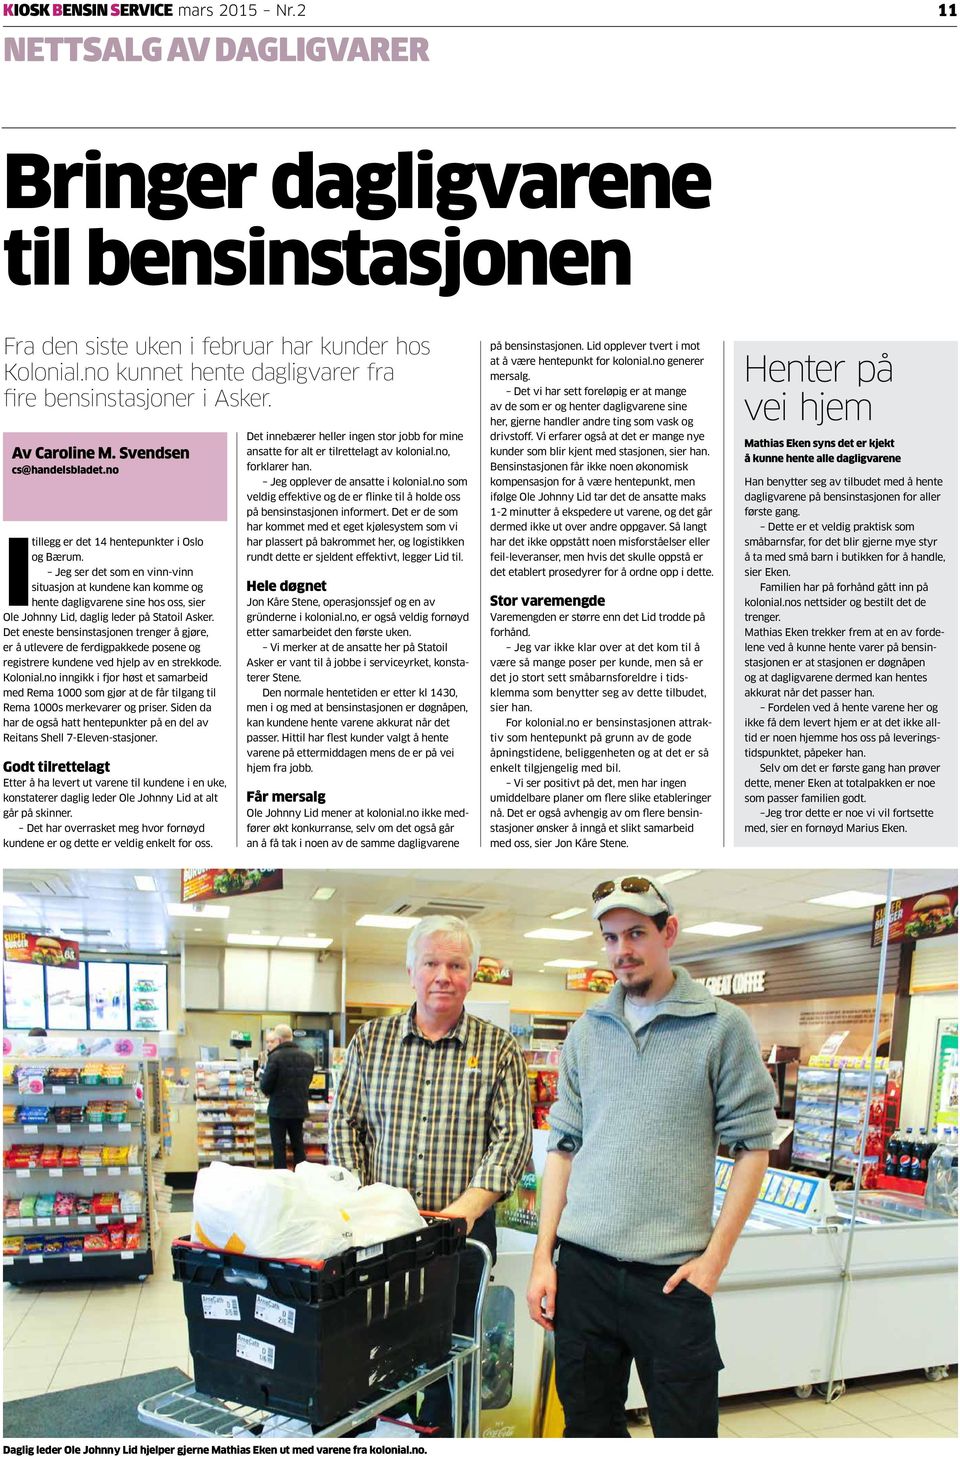 Jeg ser det som en vinn-vinn situasjon at kundene kan komme og hente dagligvarene sine hos oss, sier Ole Johnny Lid, daglig leder på Statoil Asker.